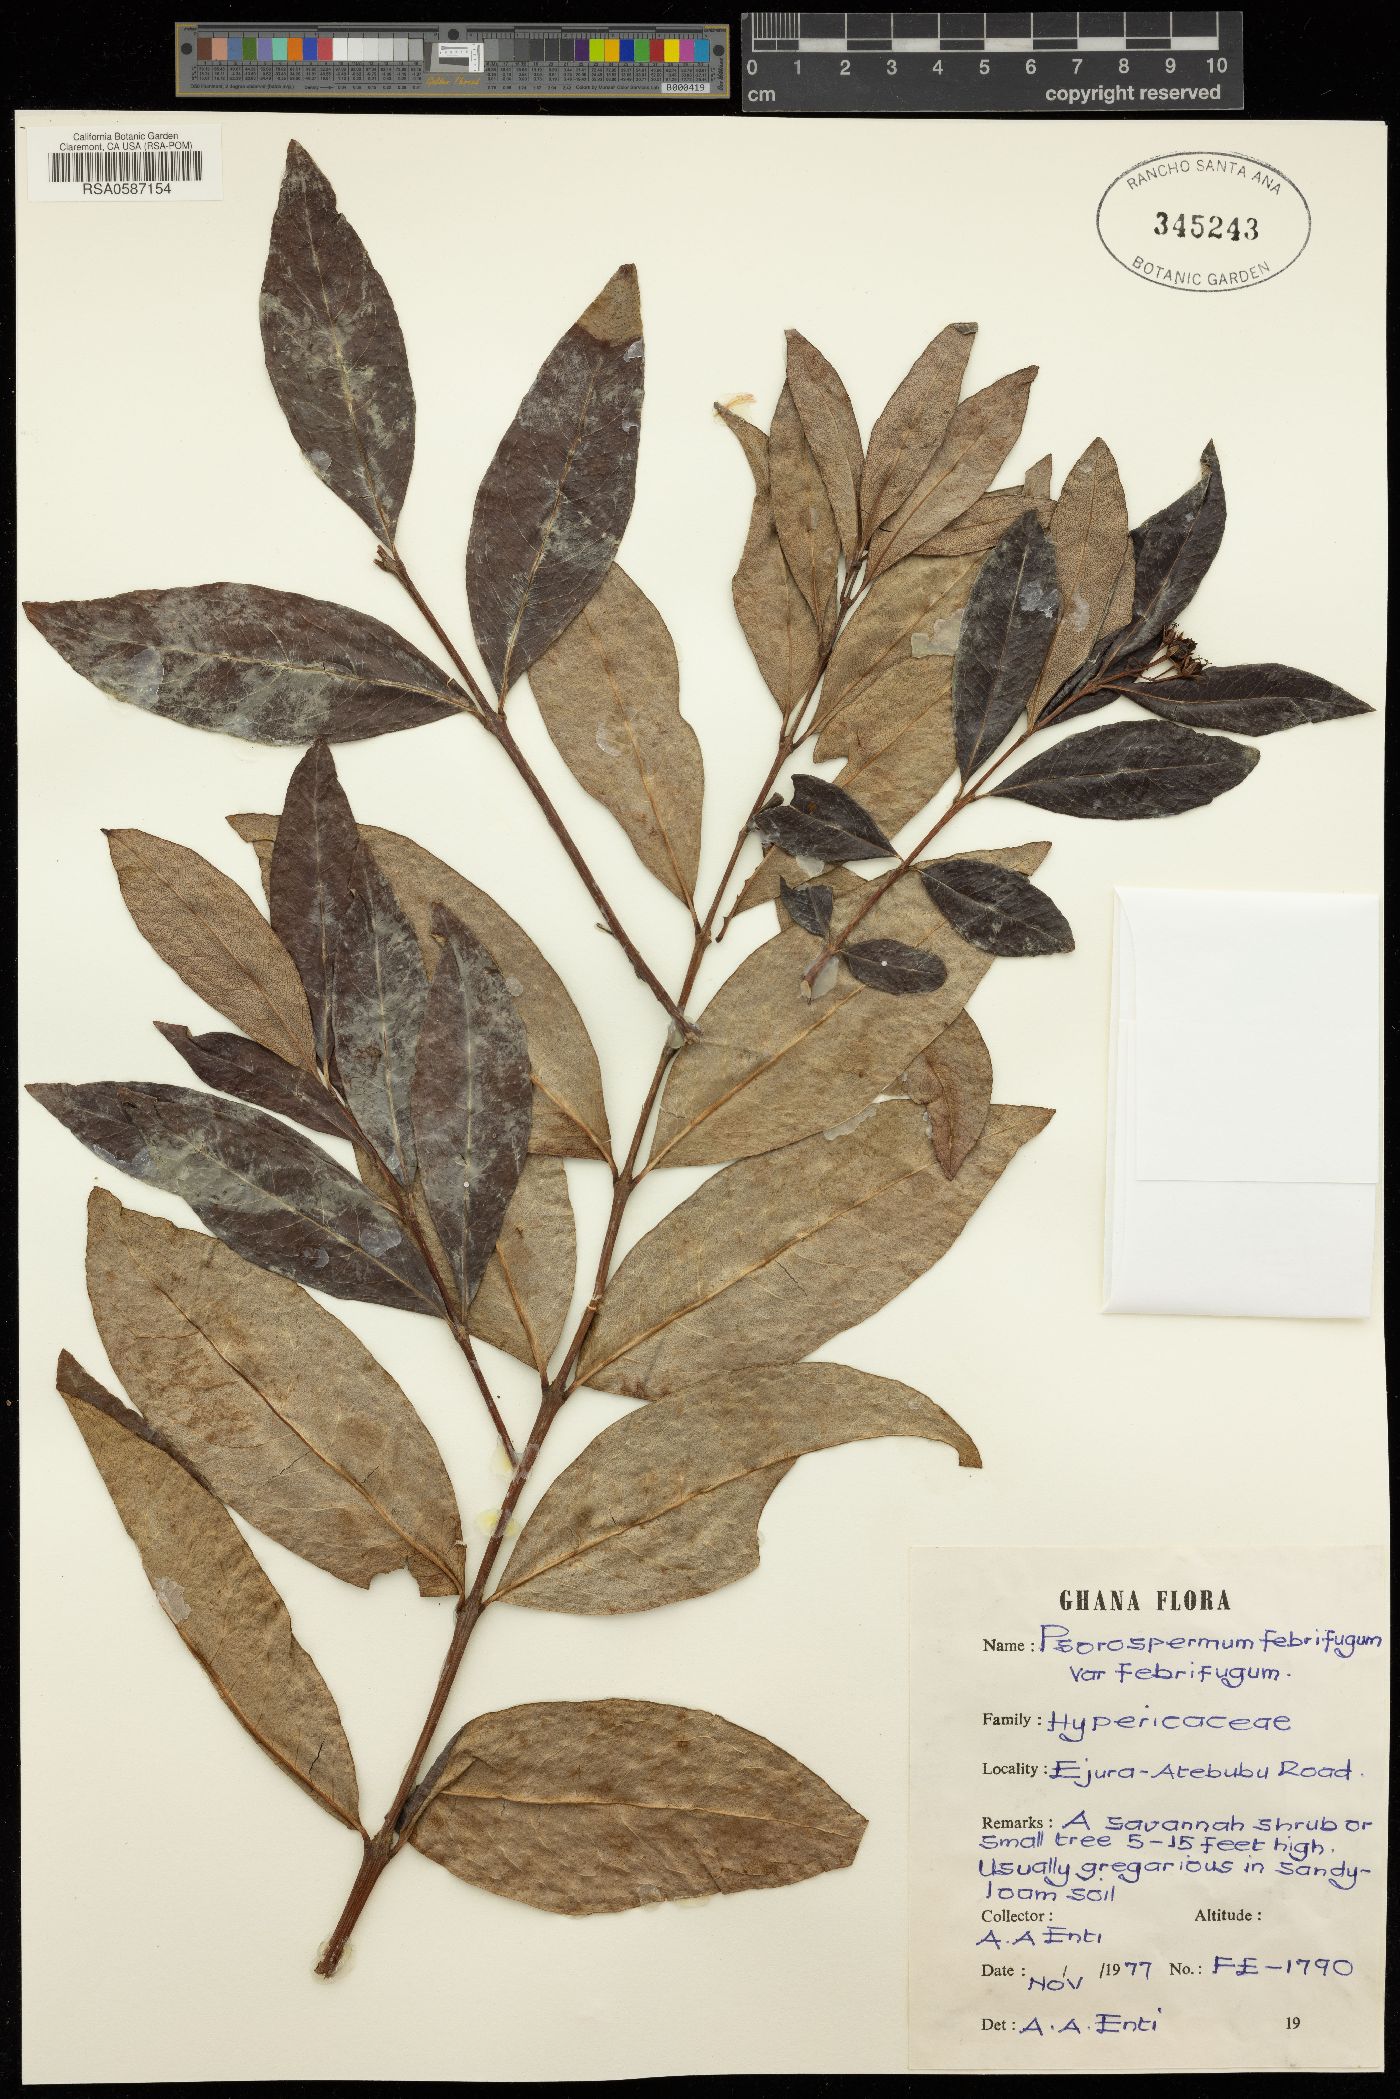 Psorospermum febrifugum var. febrifugum image